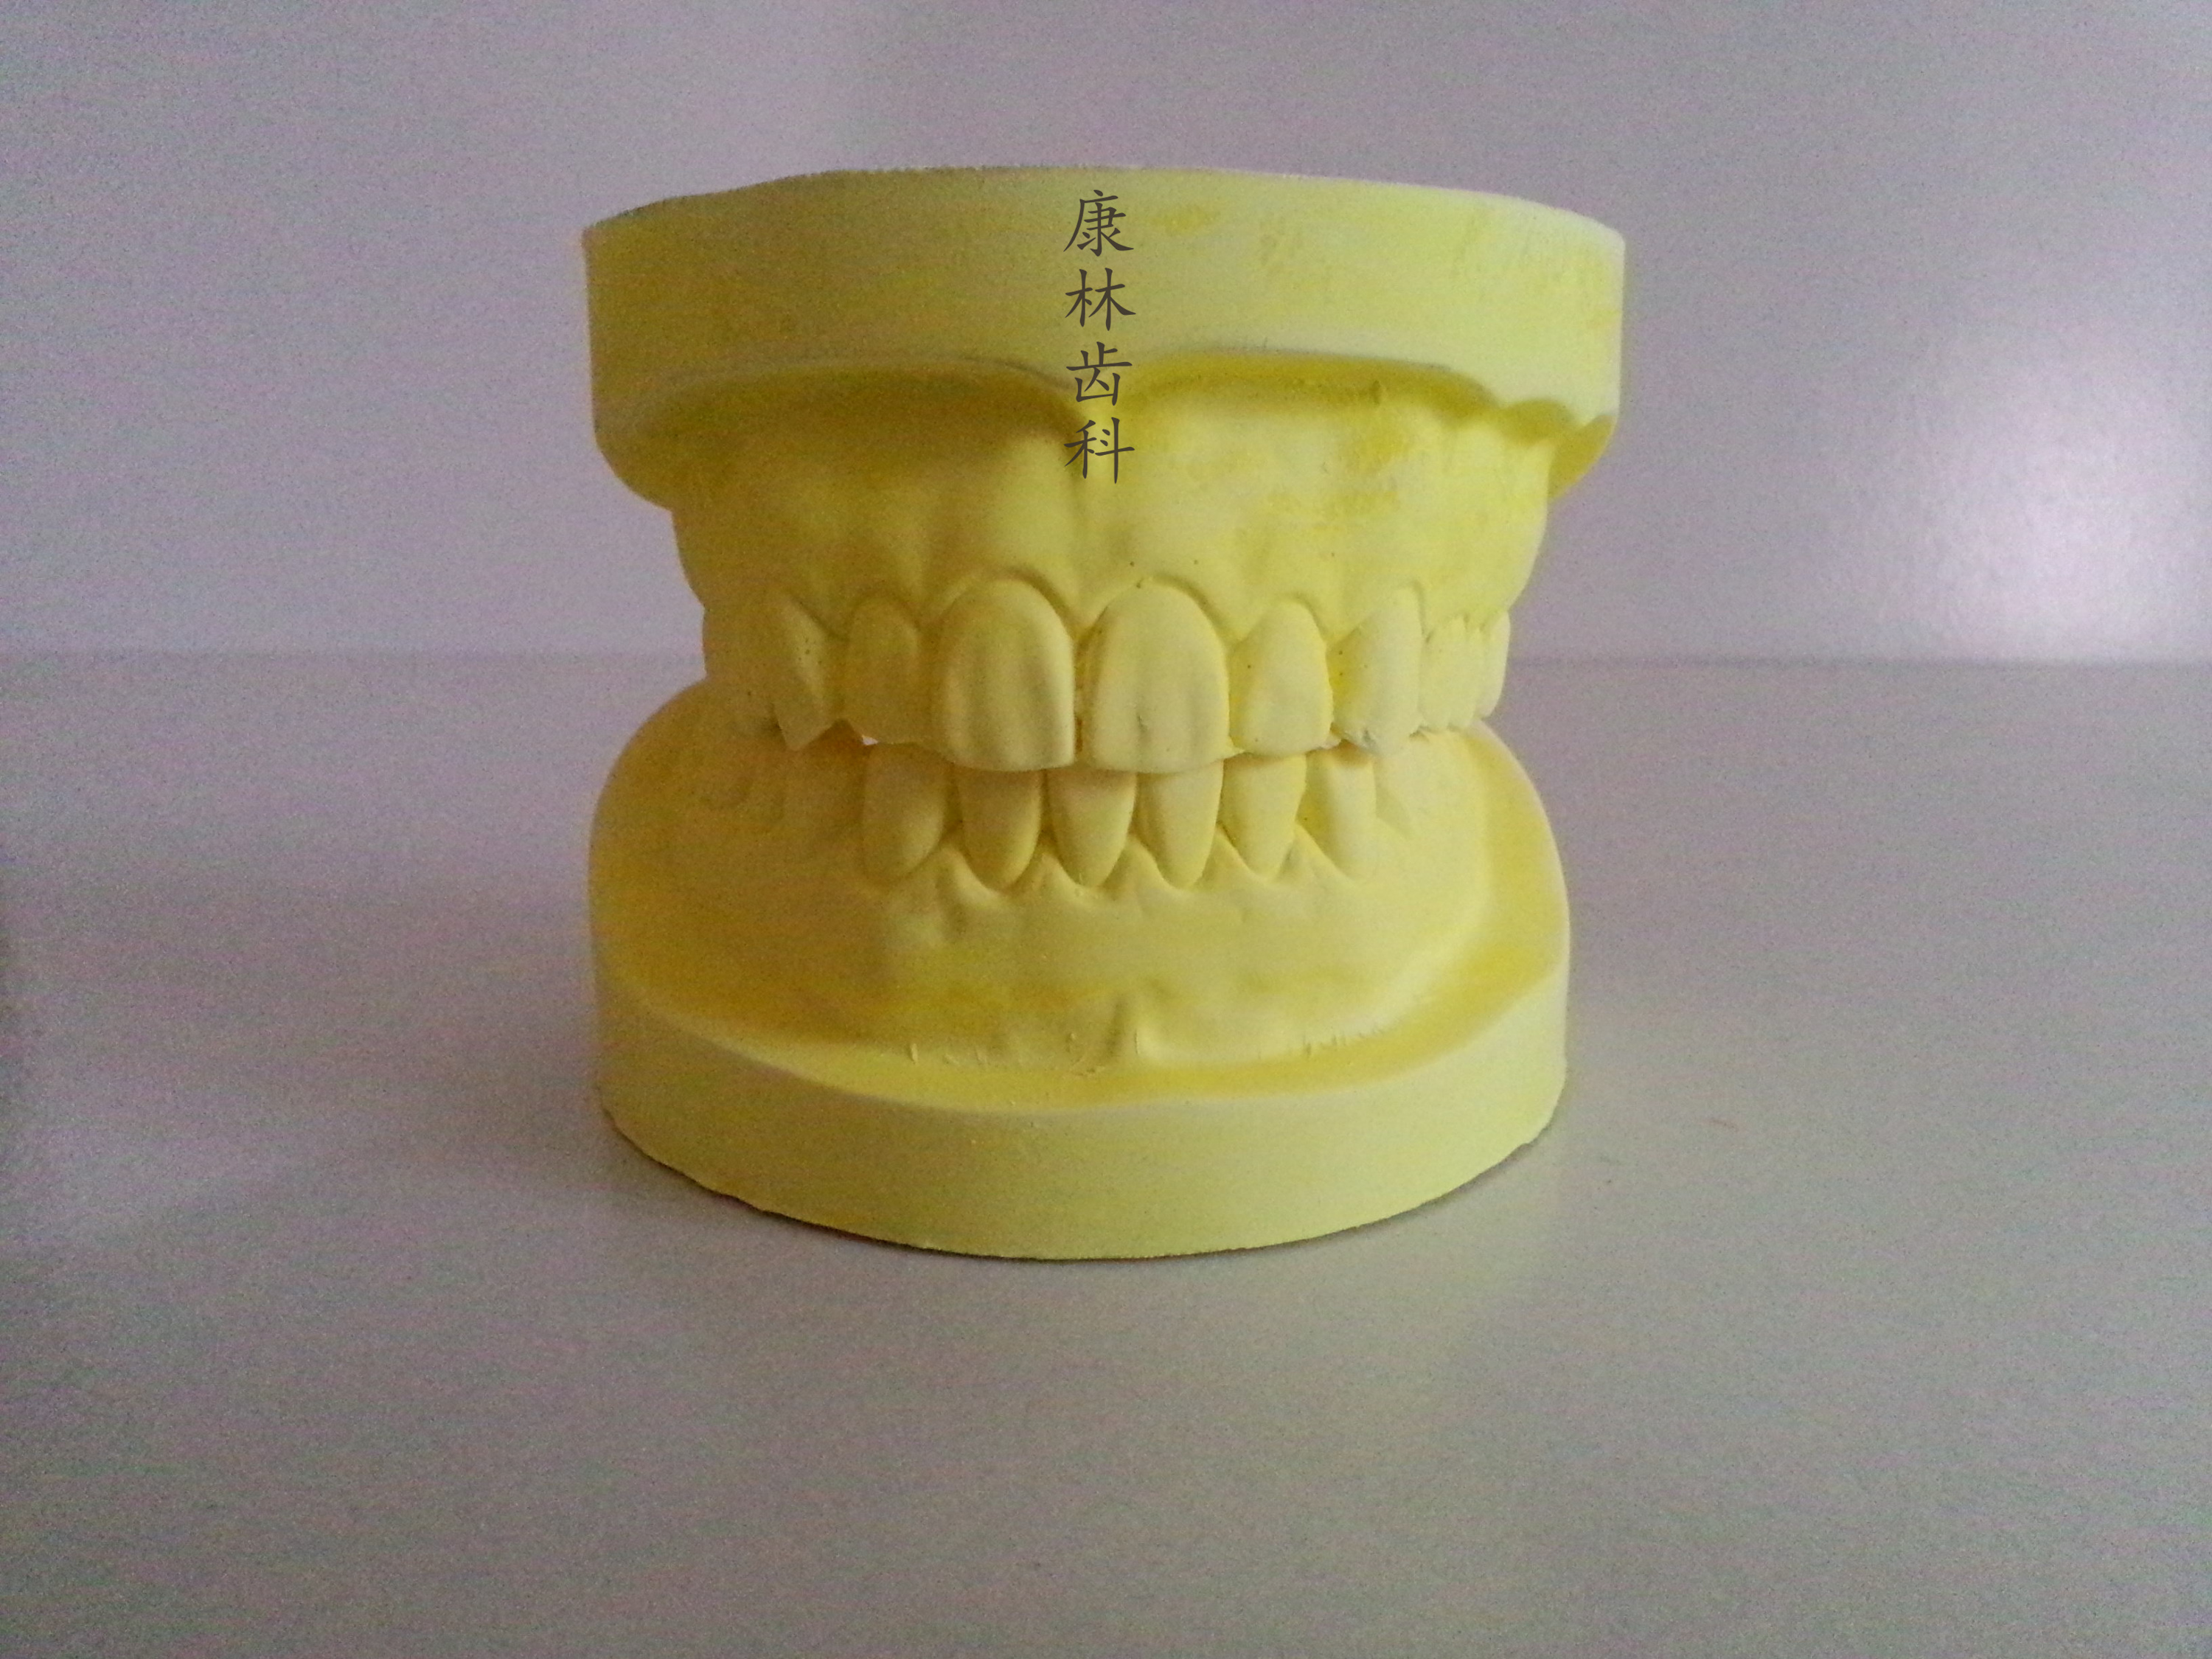 牙科 假牙模型 无牙颌模型 无牙模型 石膏模型